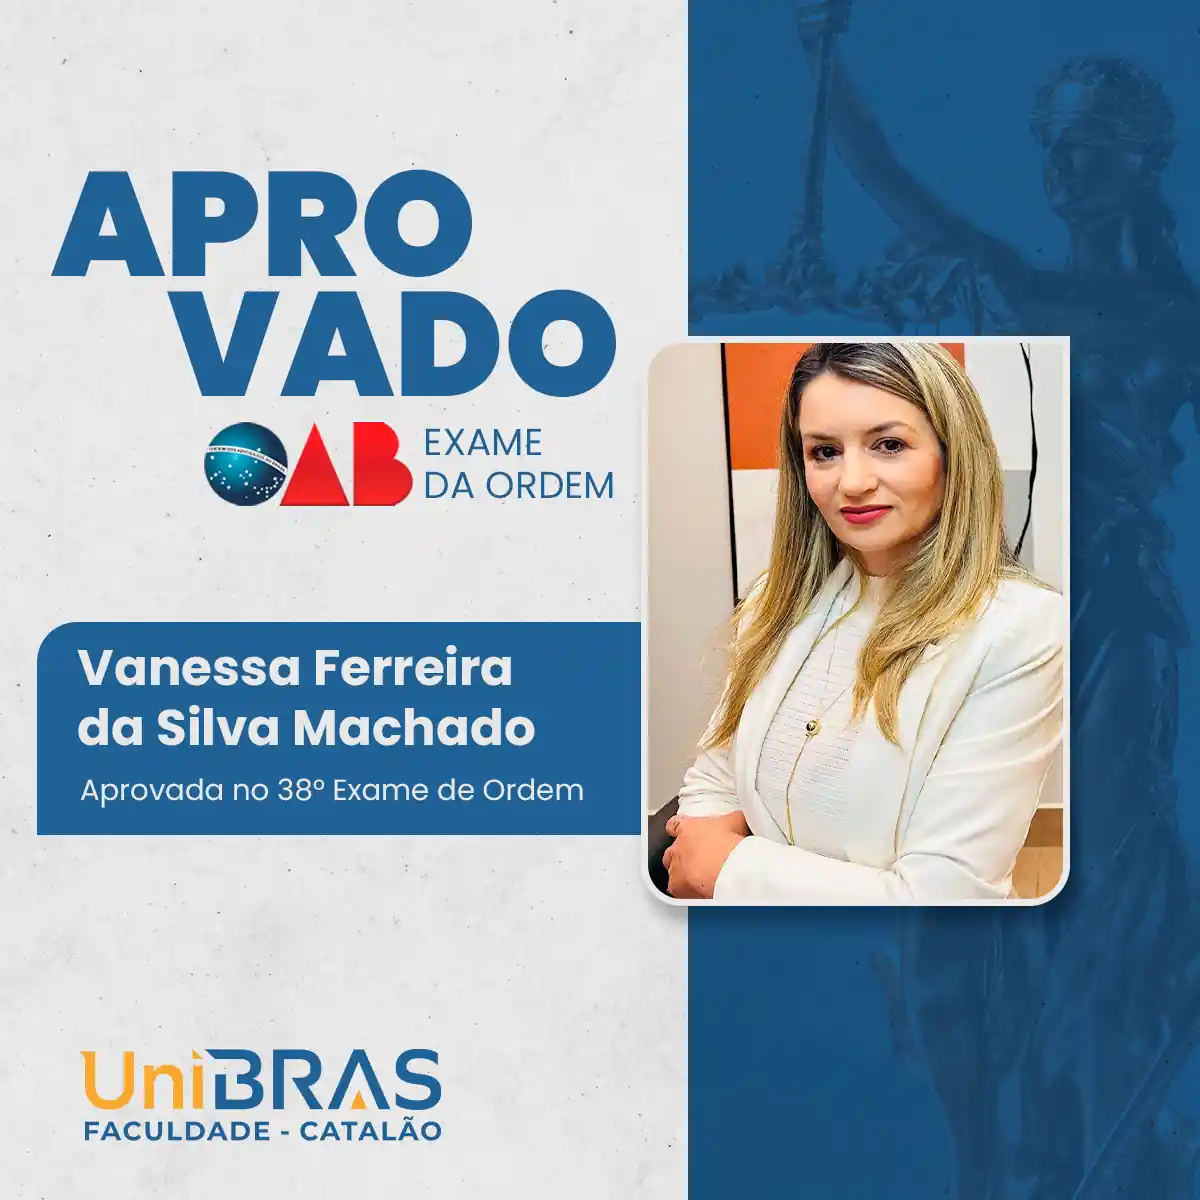 Vanessa Ferreira da Silva Machado um exemplo de excelência na Faculdade UniBRAS Catalão.opti